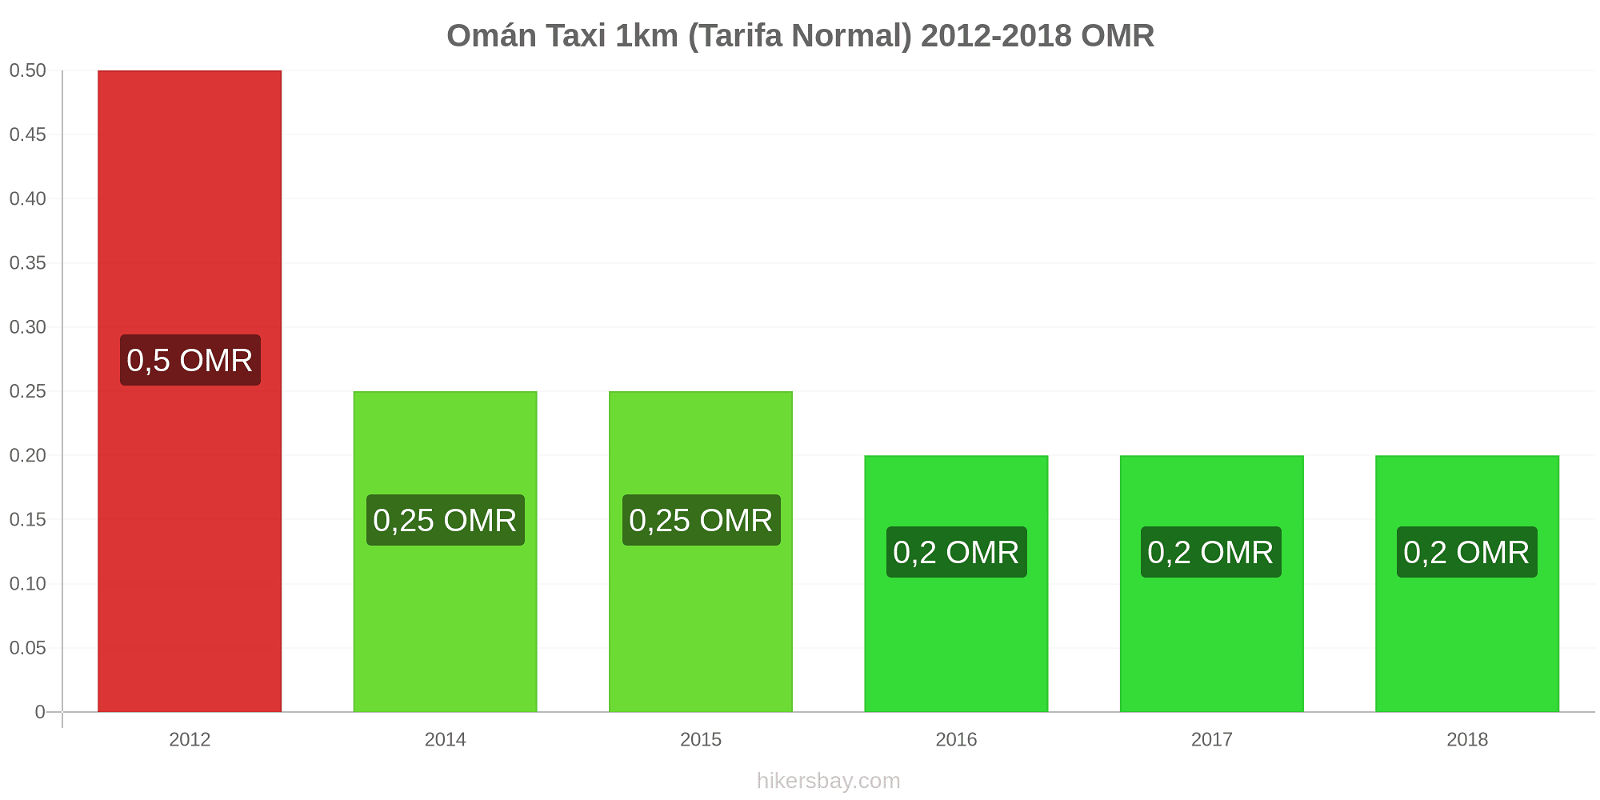 Omán cambios de precios Taxi 1km (tarifa normal) hikersbay.com